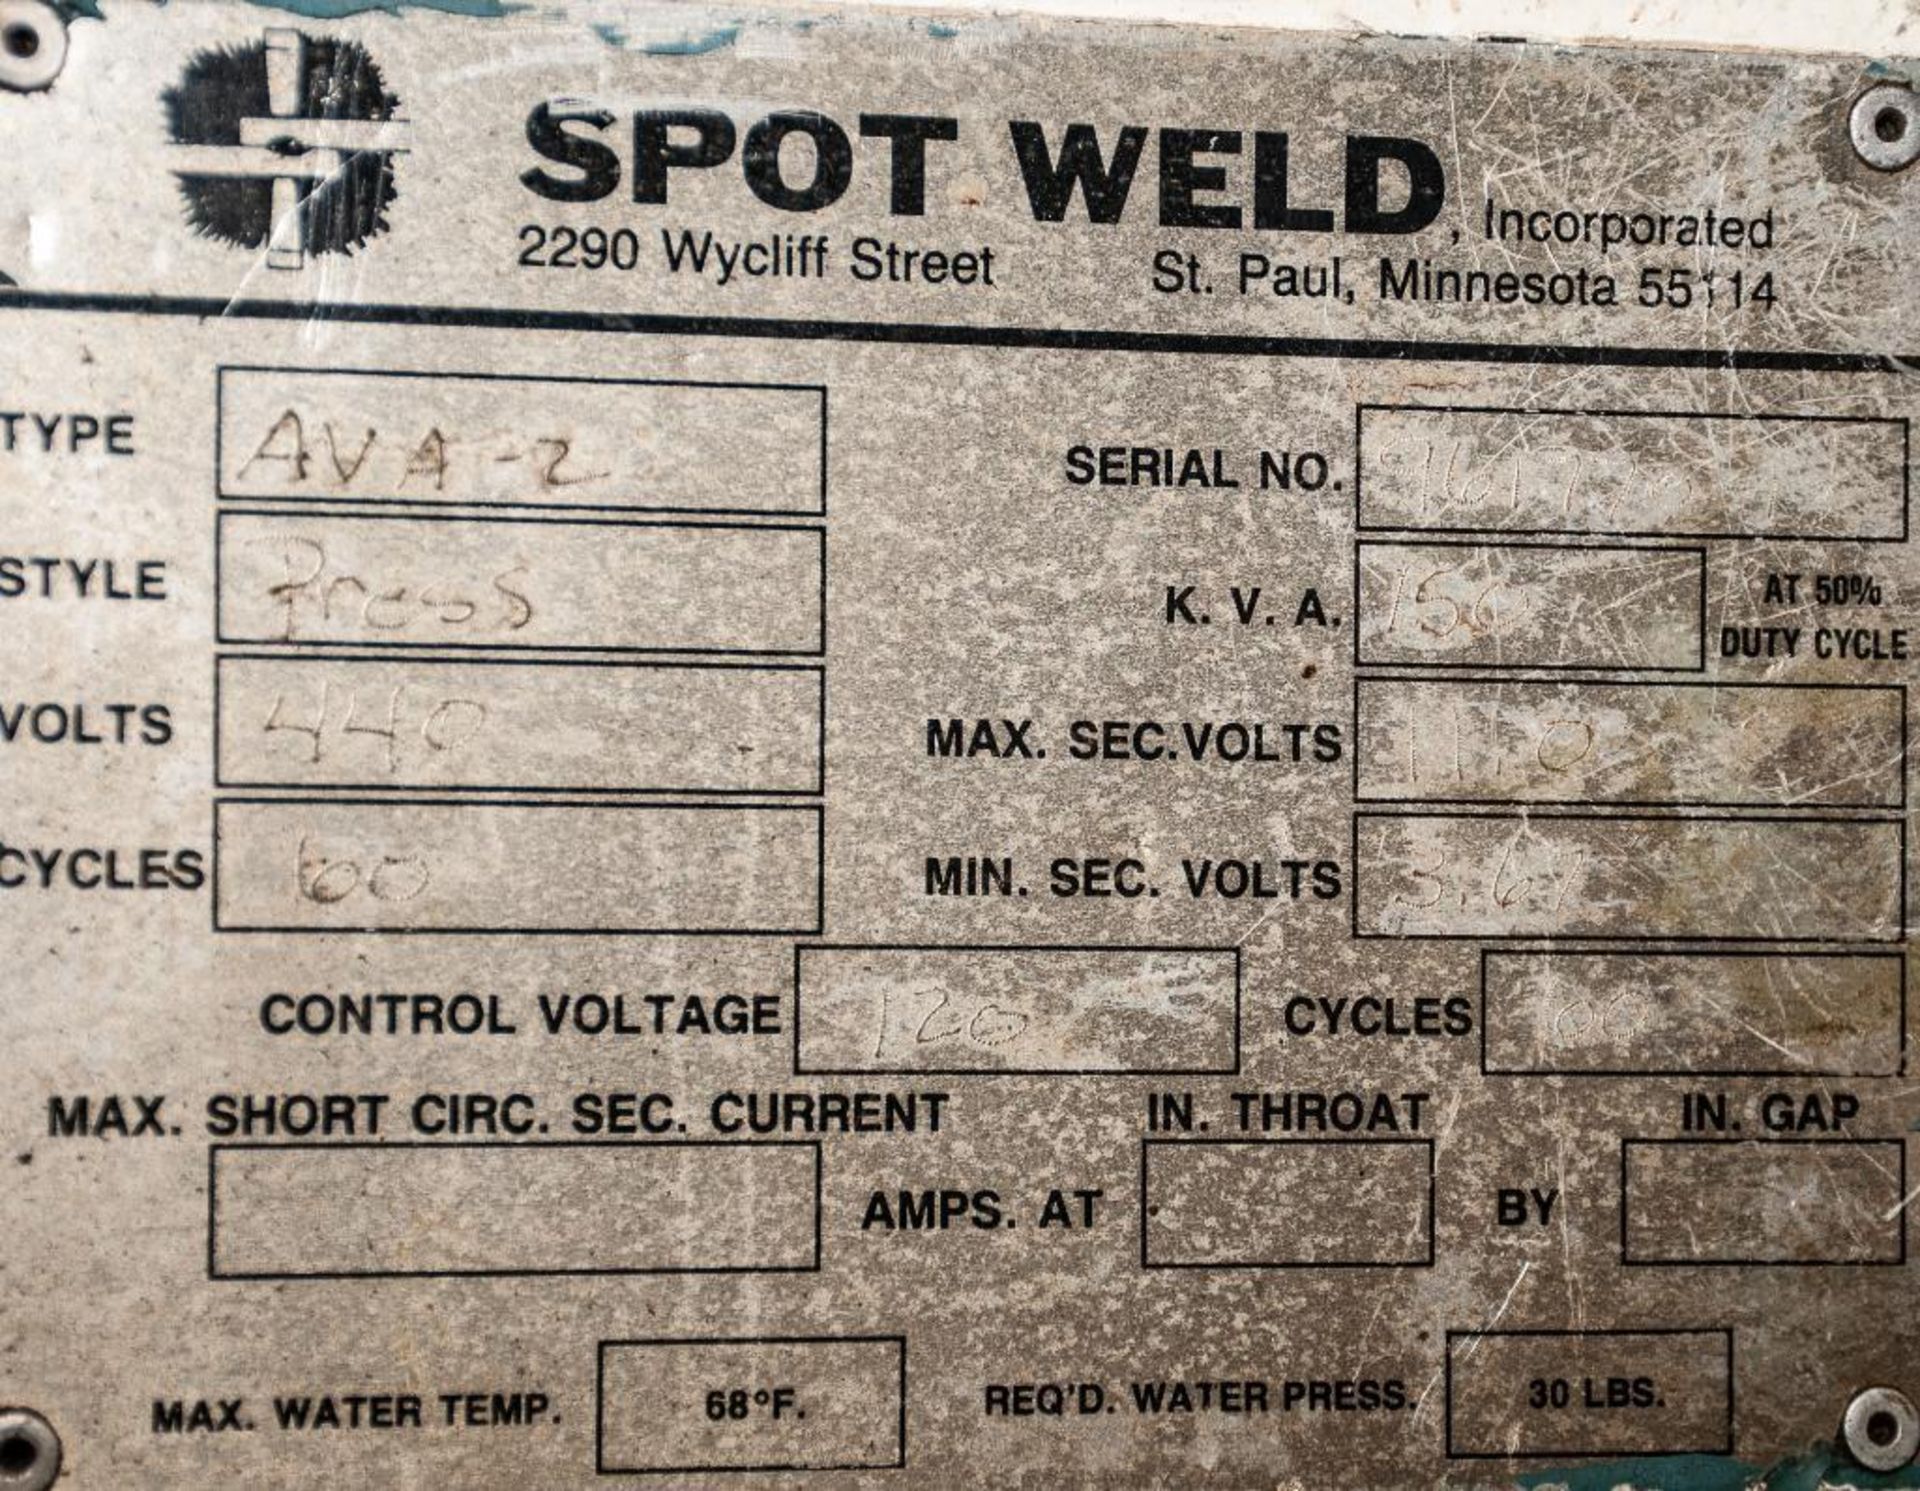 Precision Welder & Flexopress Spot Welder, Type AVA-2, s/n 961770-1, 150kva @ 50 Duty, w/ Weldchecke - Image 6 of 6